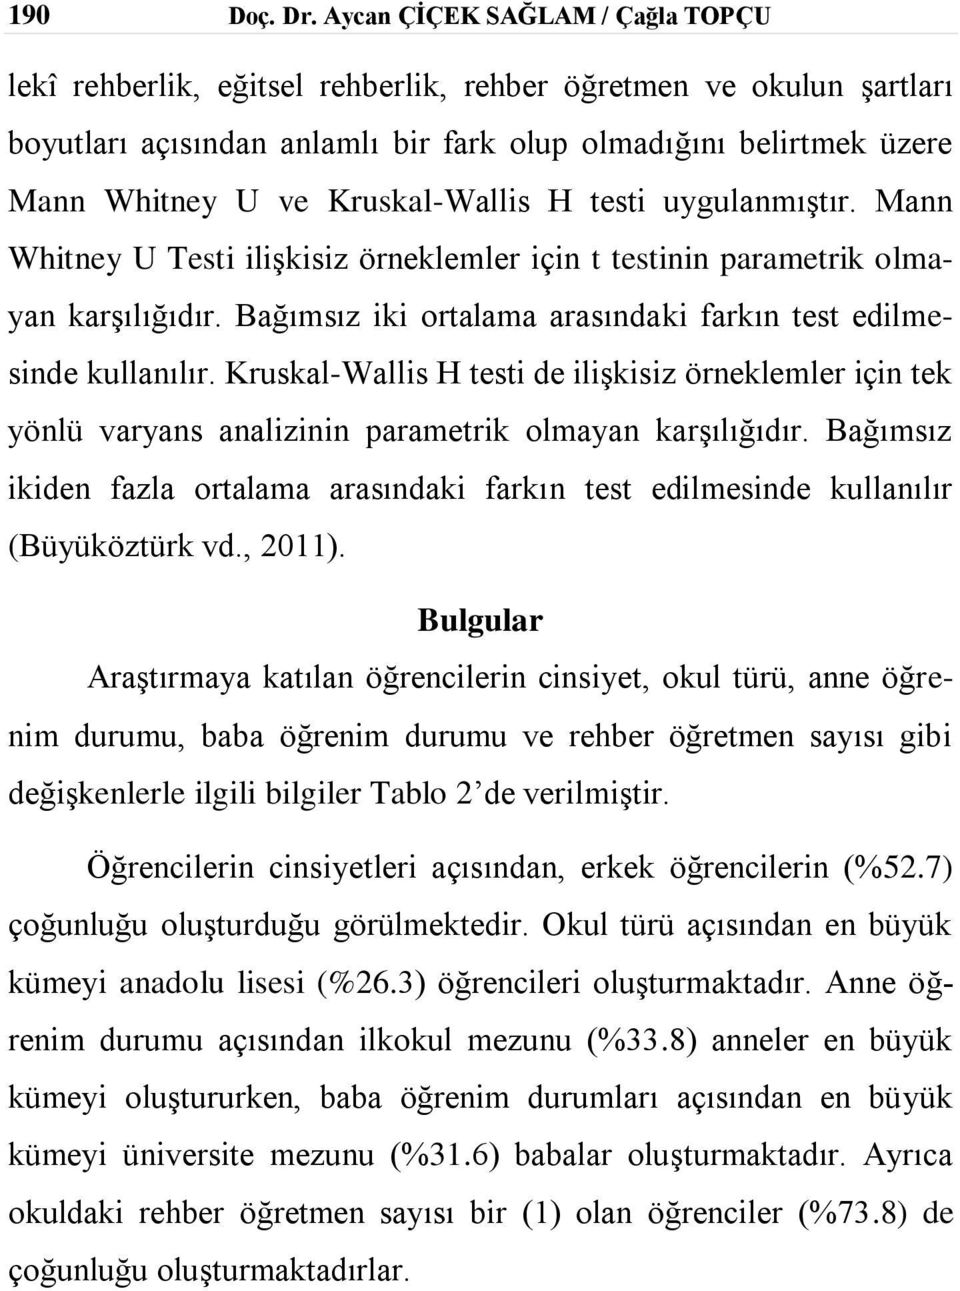 Kruskal-Wallis H testi uygulanmıştır. Mann Whitney U Testi ilişkisiz örneklemler için t testinin parametrik olmayan karşılığıdır. Bağımsız iki ortalama arasındaki farkın test edilmesinde kullanılır.